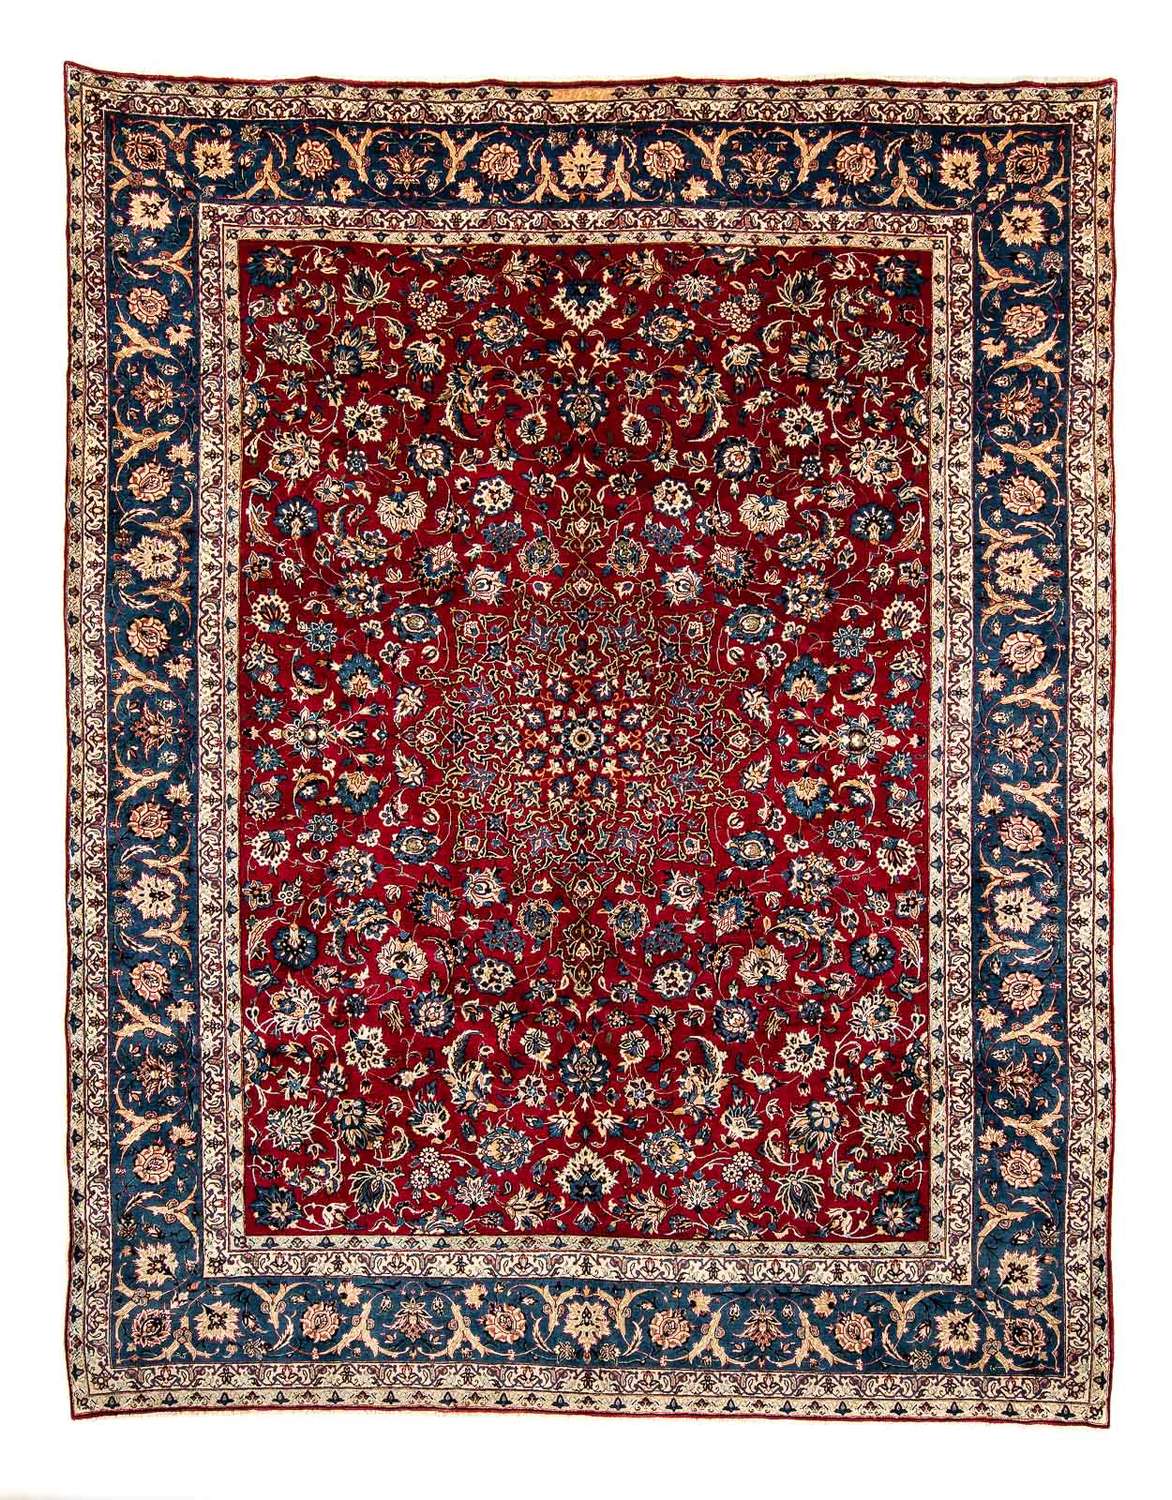 Persisk teppe - klassisk - 380 x 307 cm - mørk rød